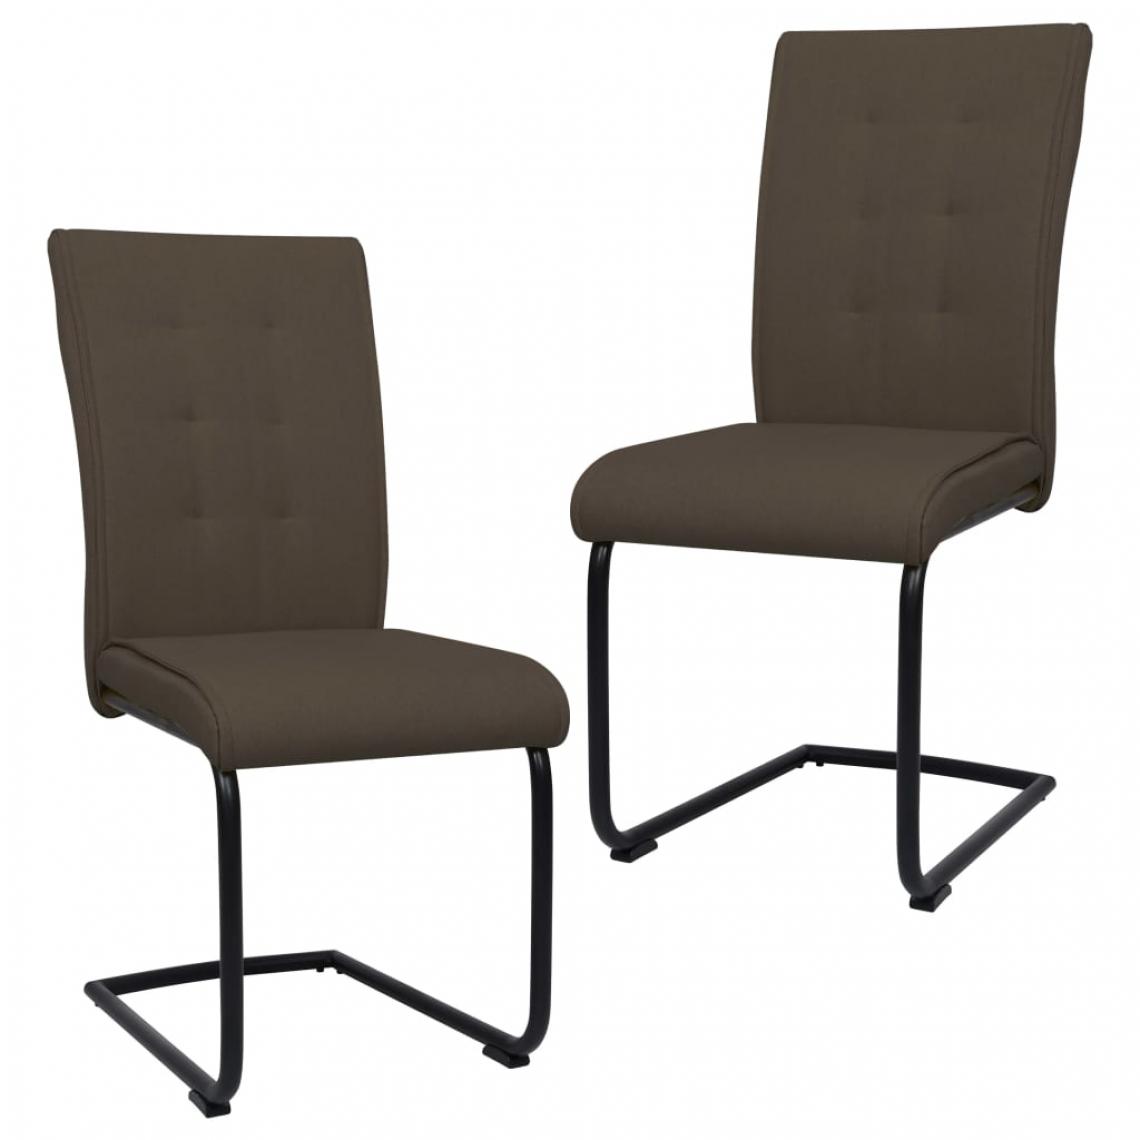 Icaverne - sublime Fauteuils et chaises gamme Berne Chaises de salle à manger cantilever 2 pcs Marron Tissu - Chaises